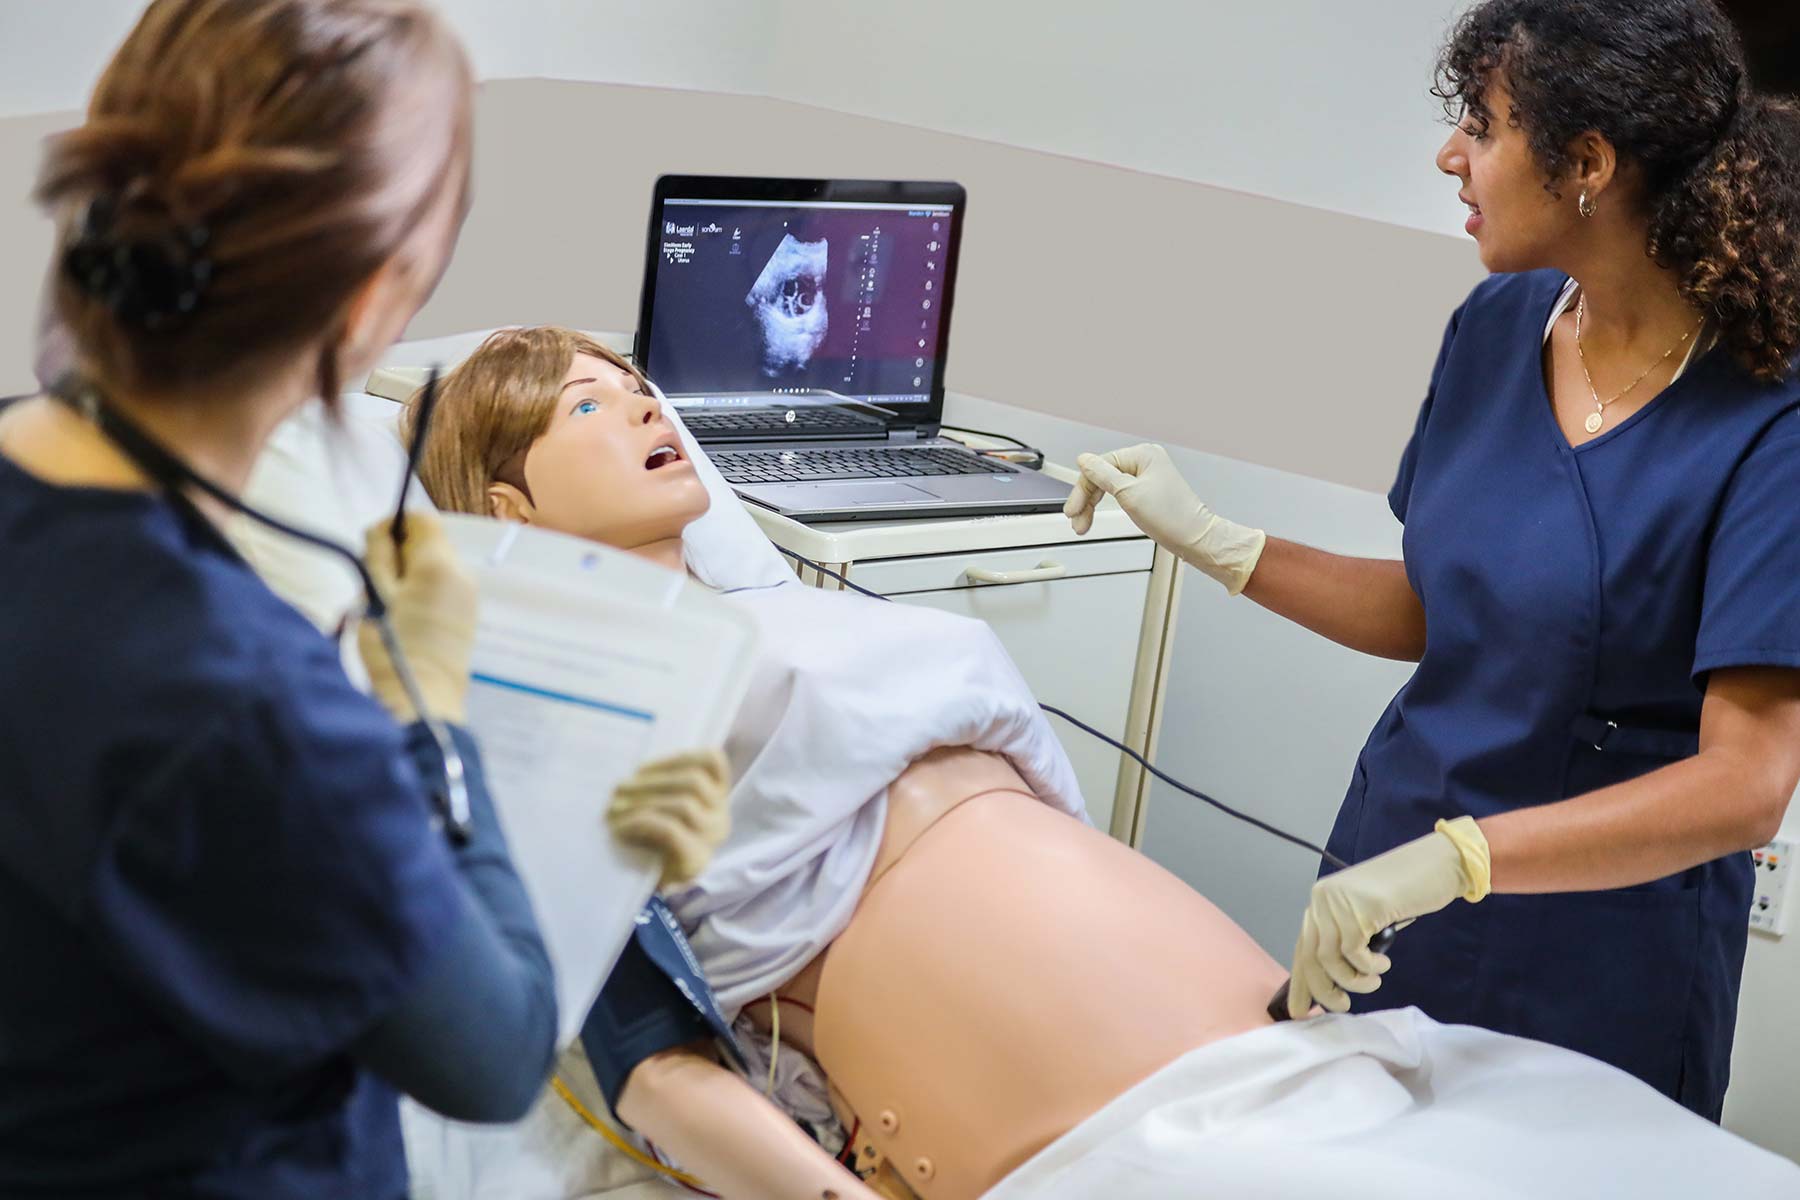 PREGNANCY SIMULATION SUIT